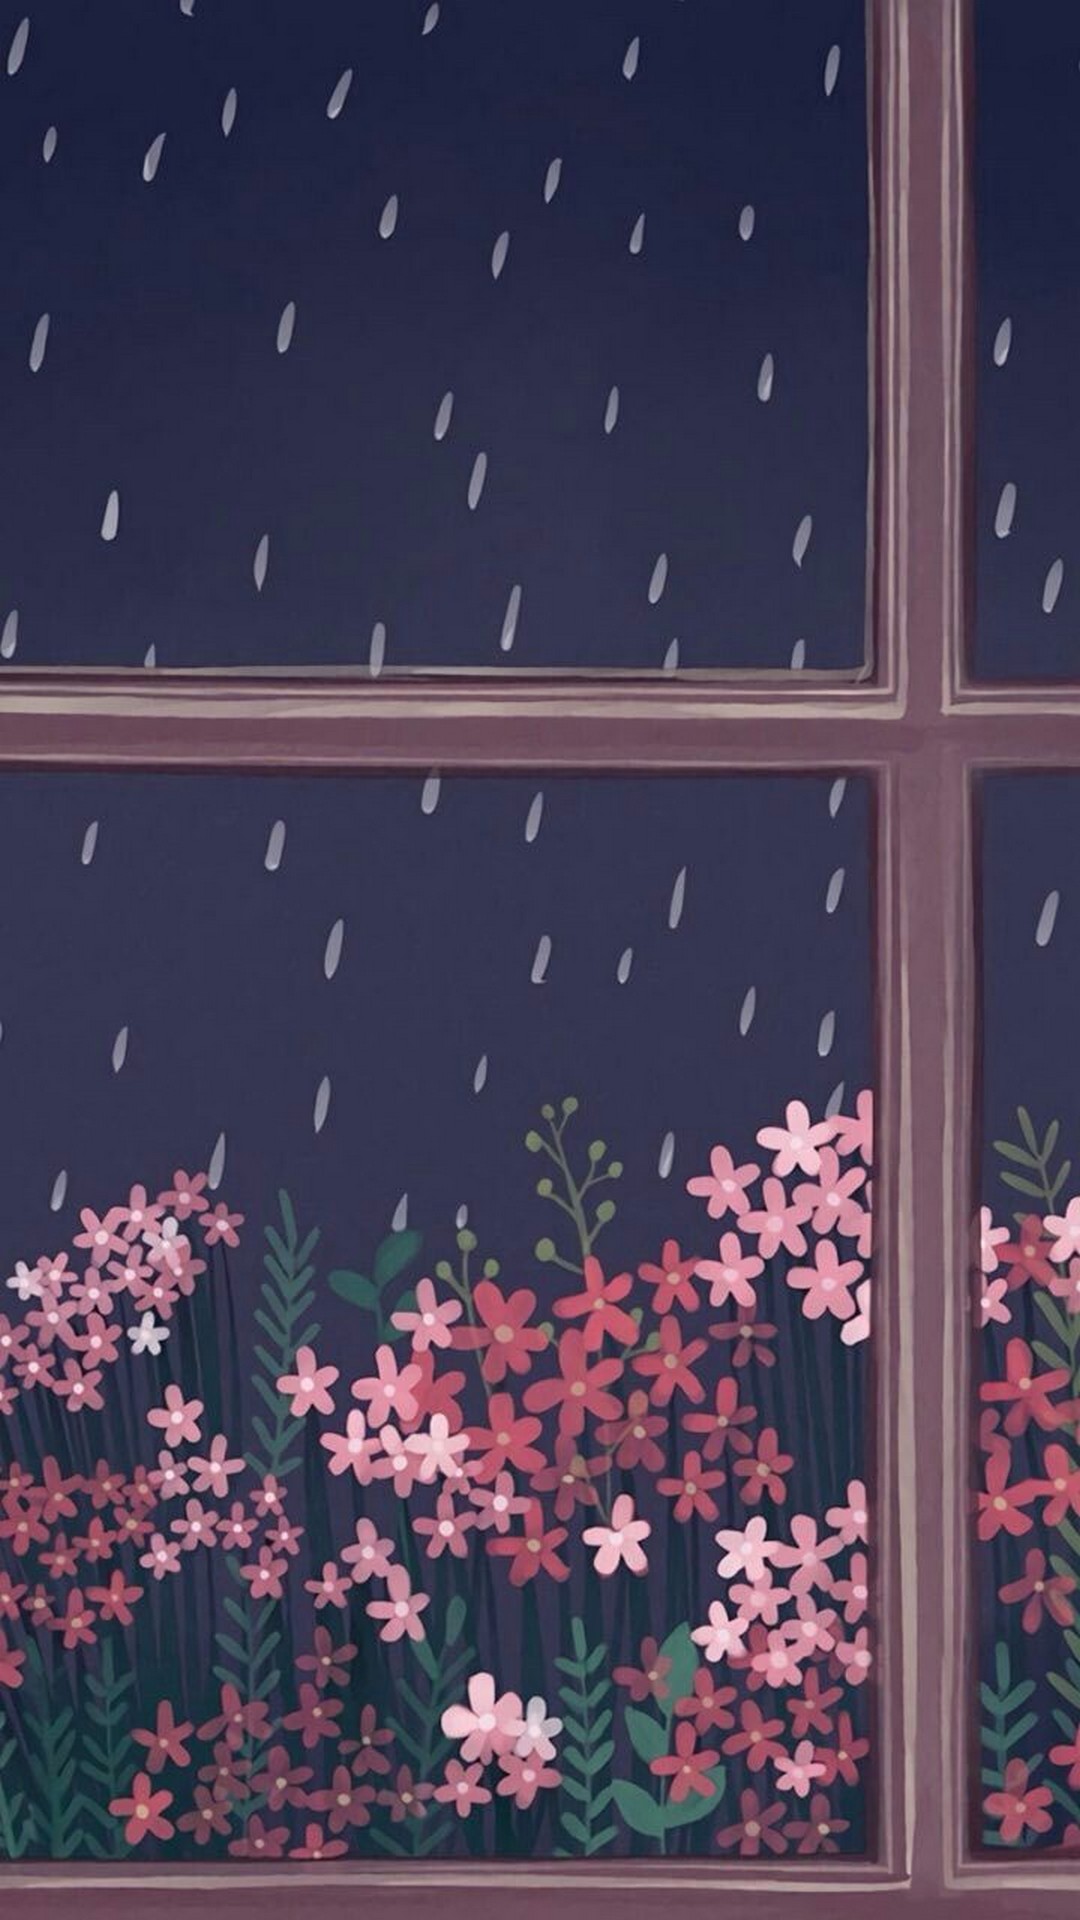 Rain Wallpaper For iPhone 6